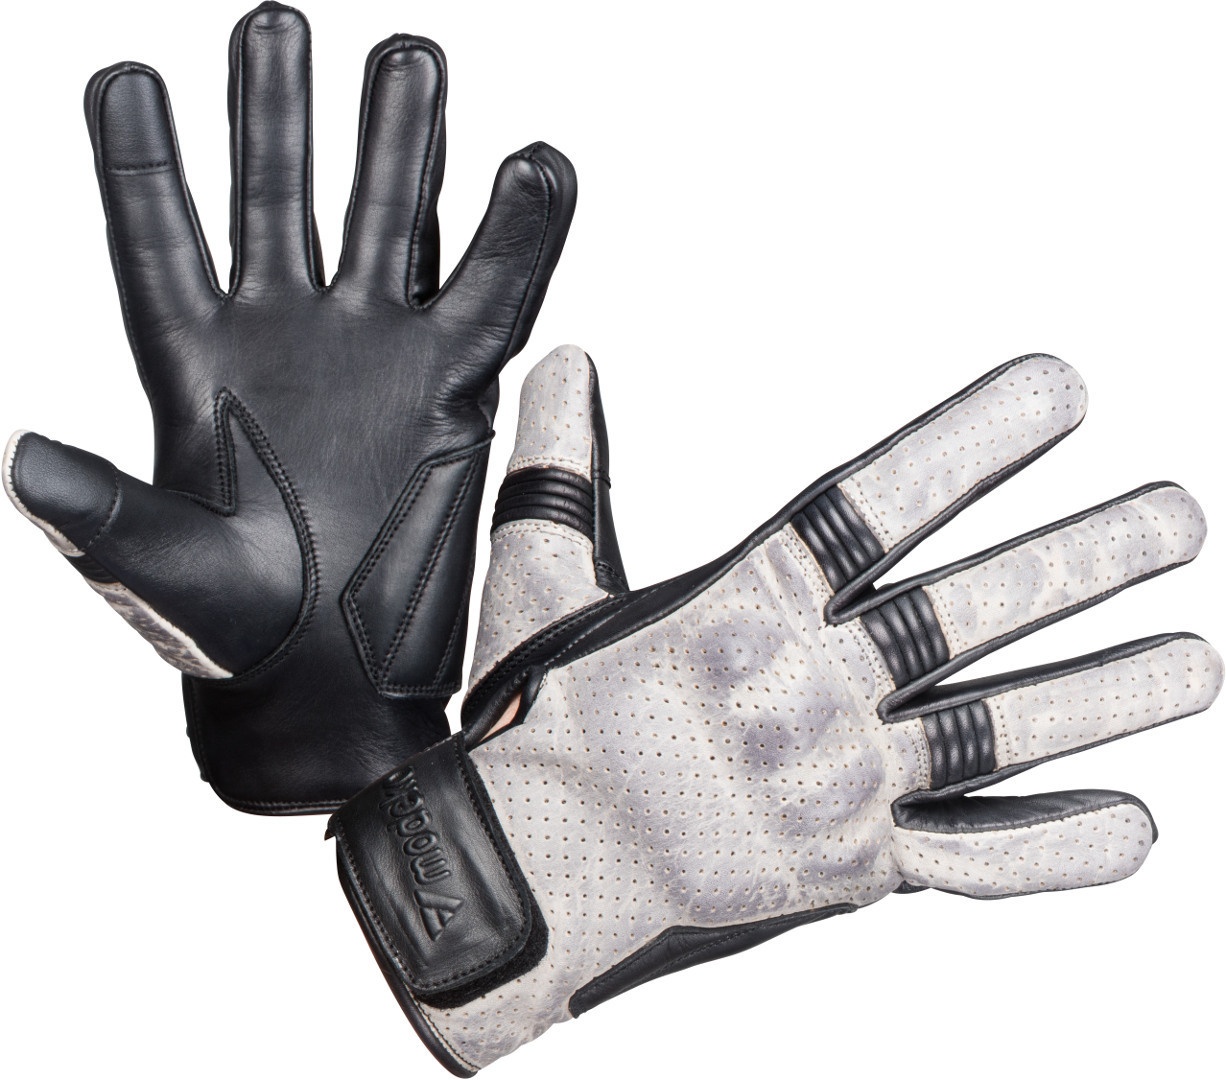 Modeka Hot Two Dames Motorfiets Handschoenen, zwart-grijs, S Voorvrouw